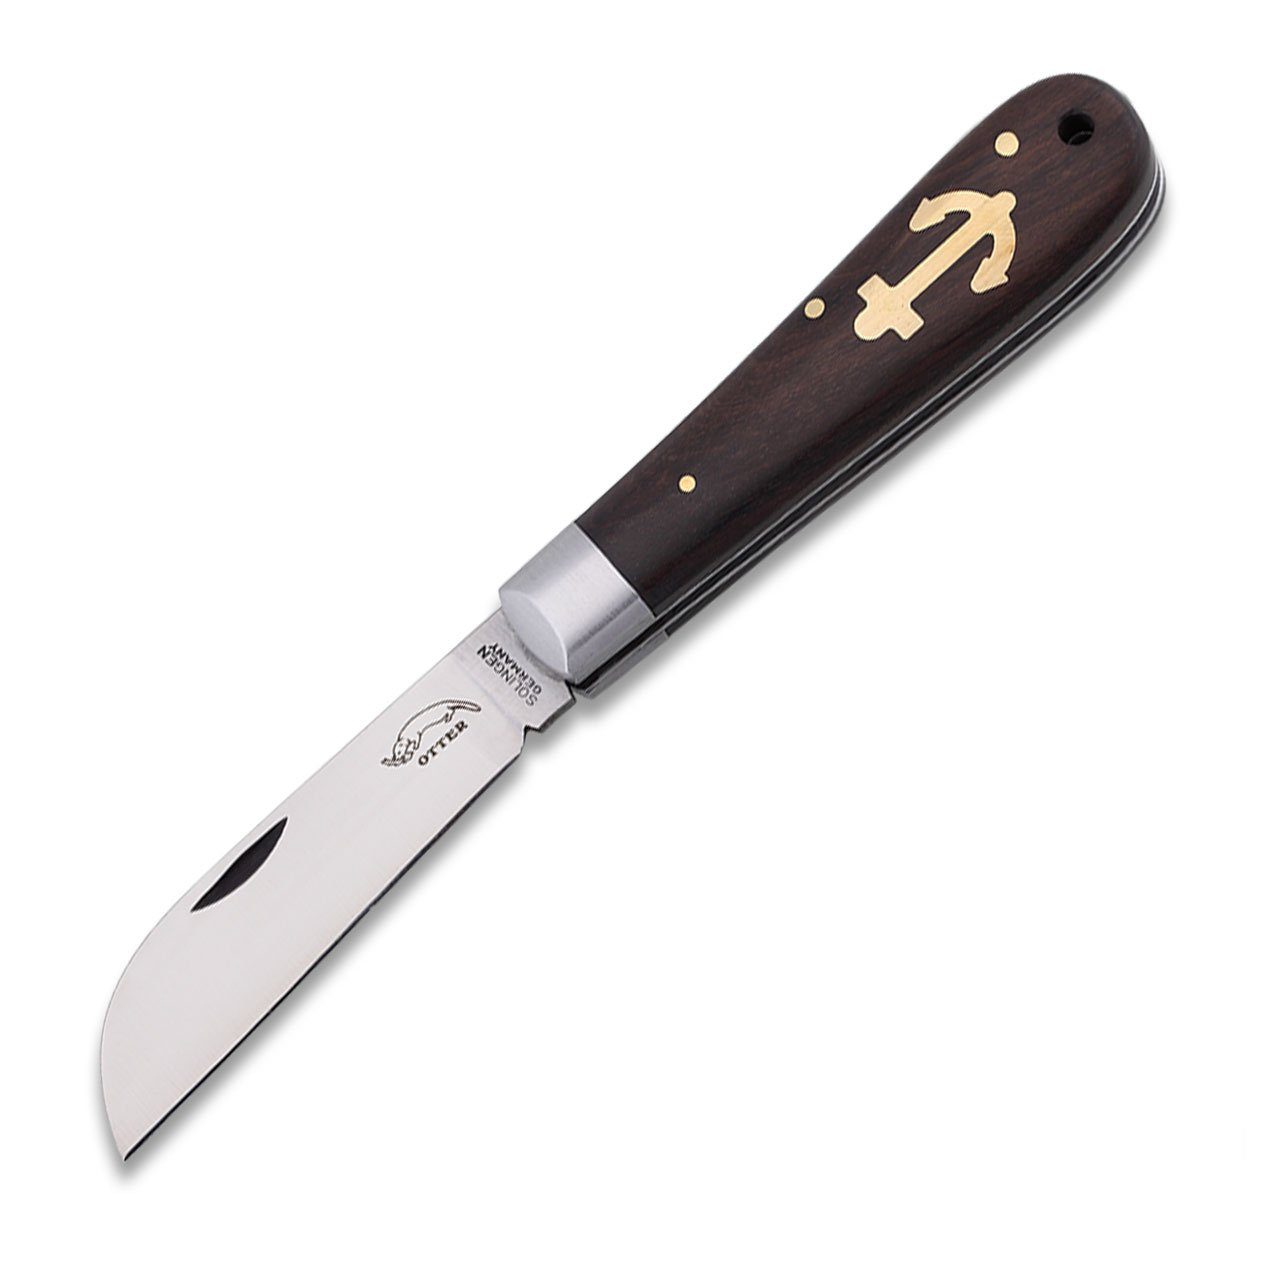 Otter Messer Taschenmesser Anker-Messer groß Grenadill Carbonstahlklinge, nicht rostfrei, Slipjoint